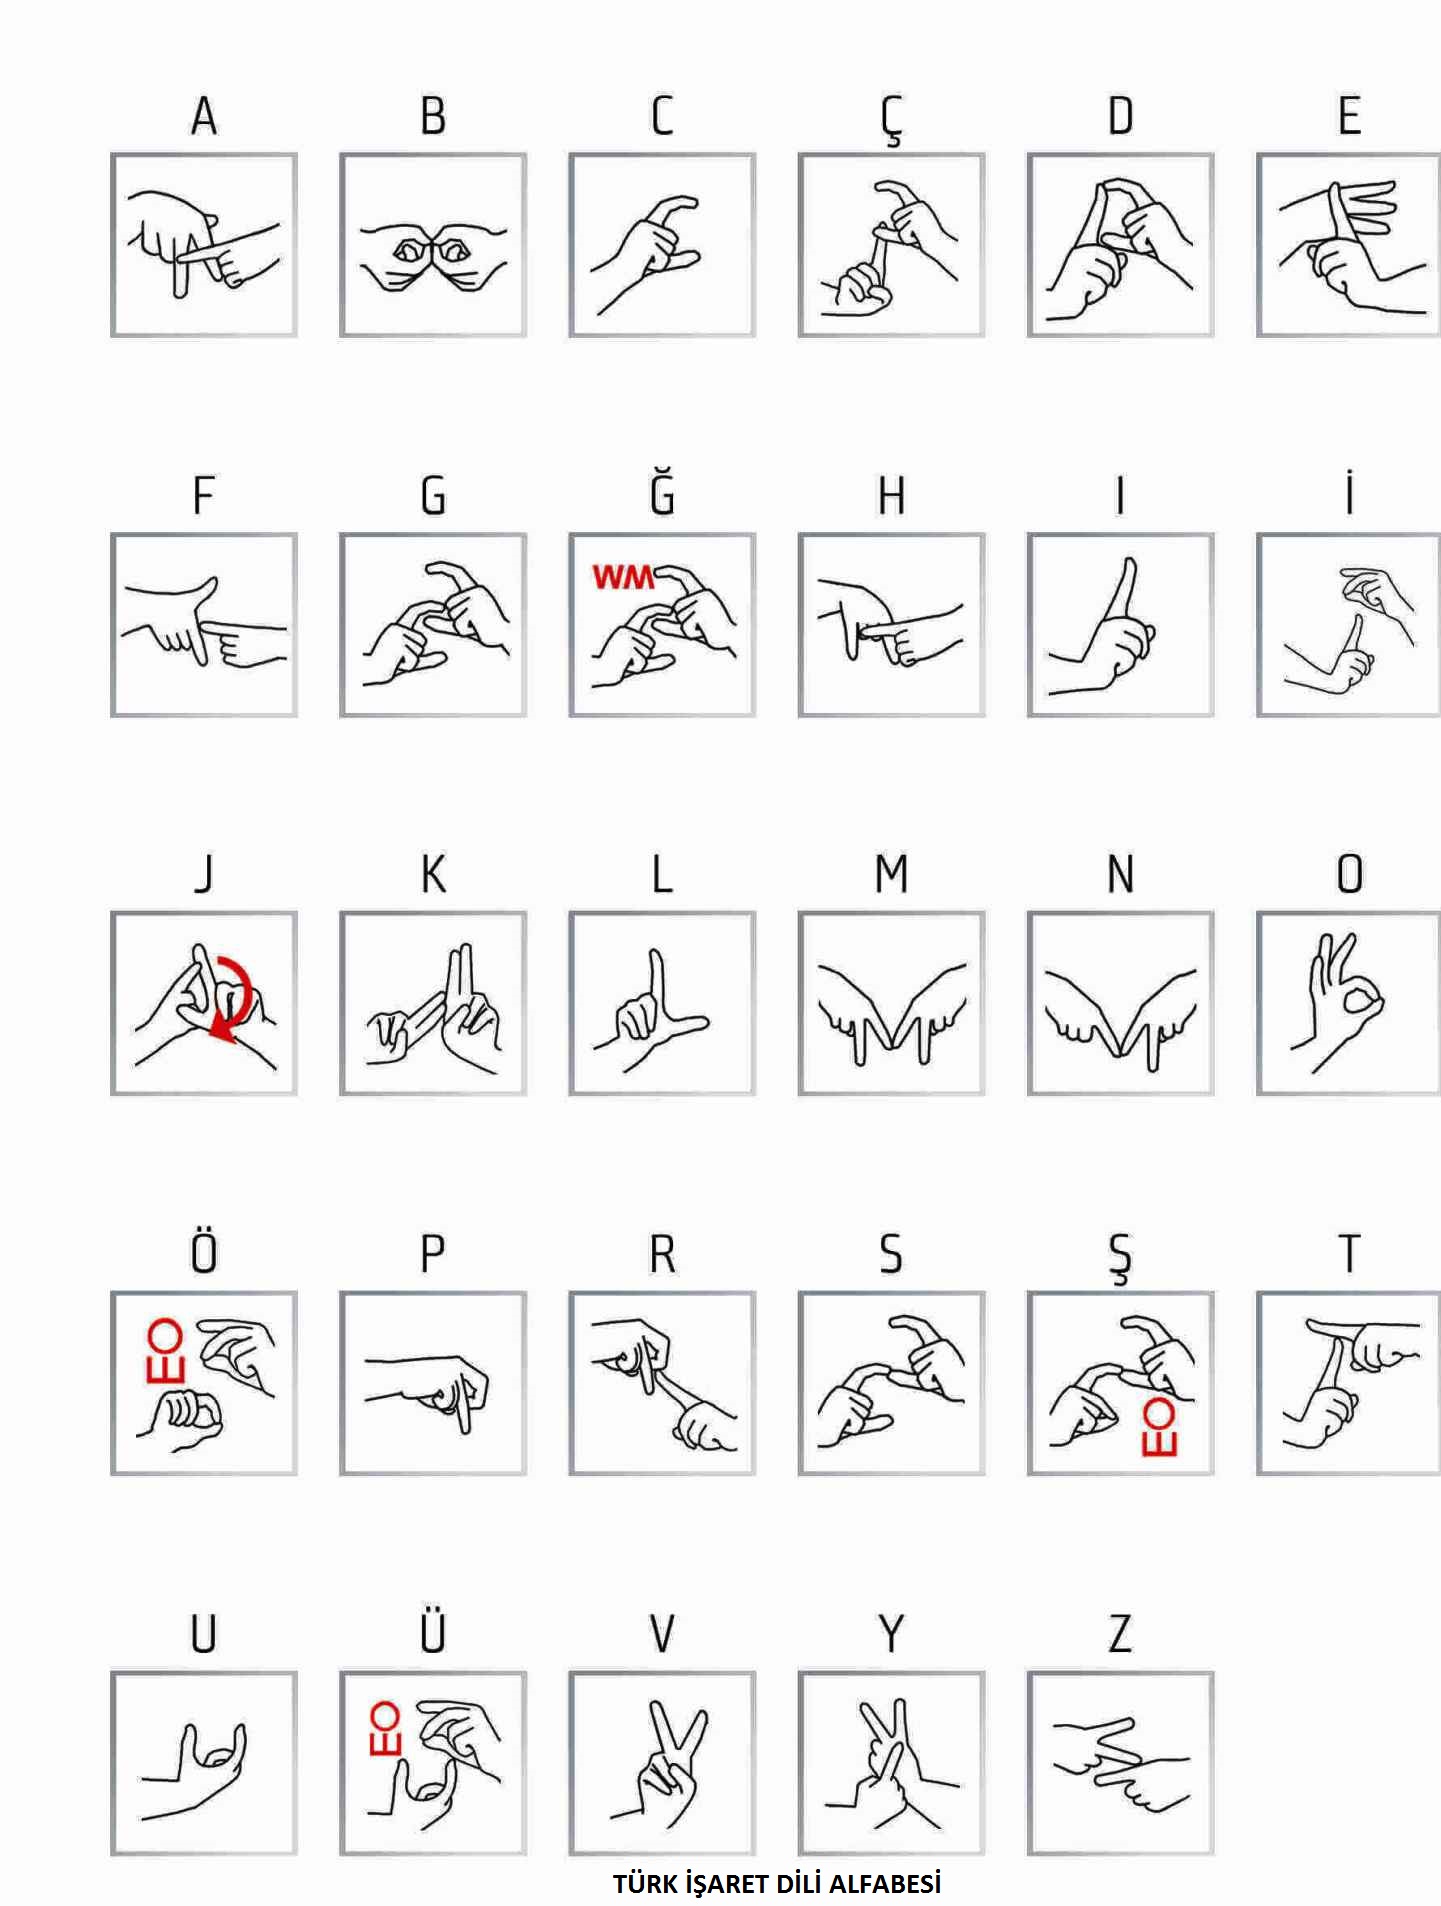 türk işaret dili alfabesi